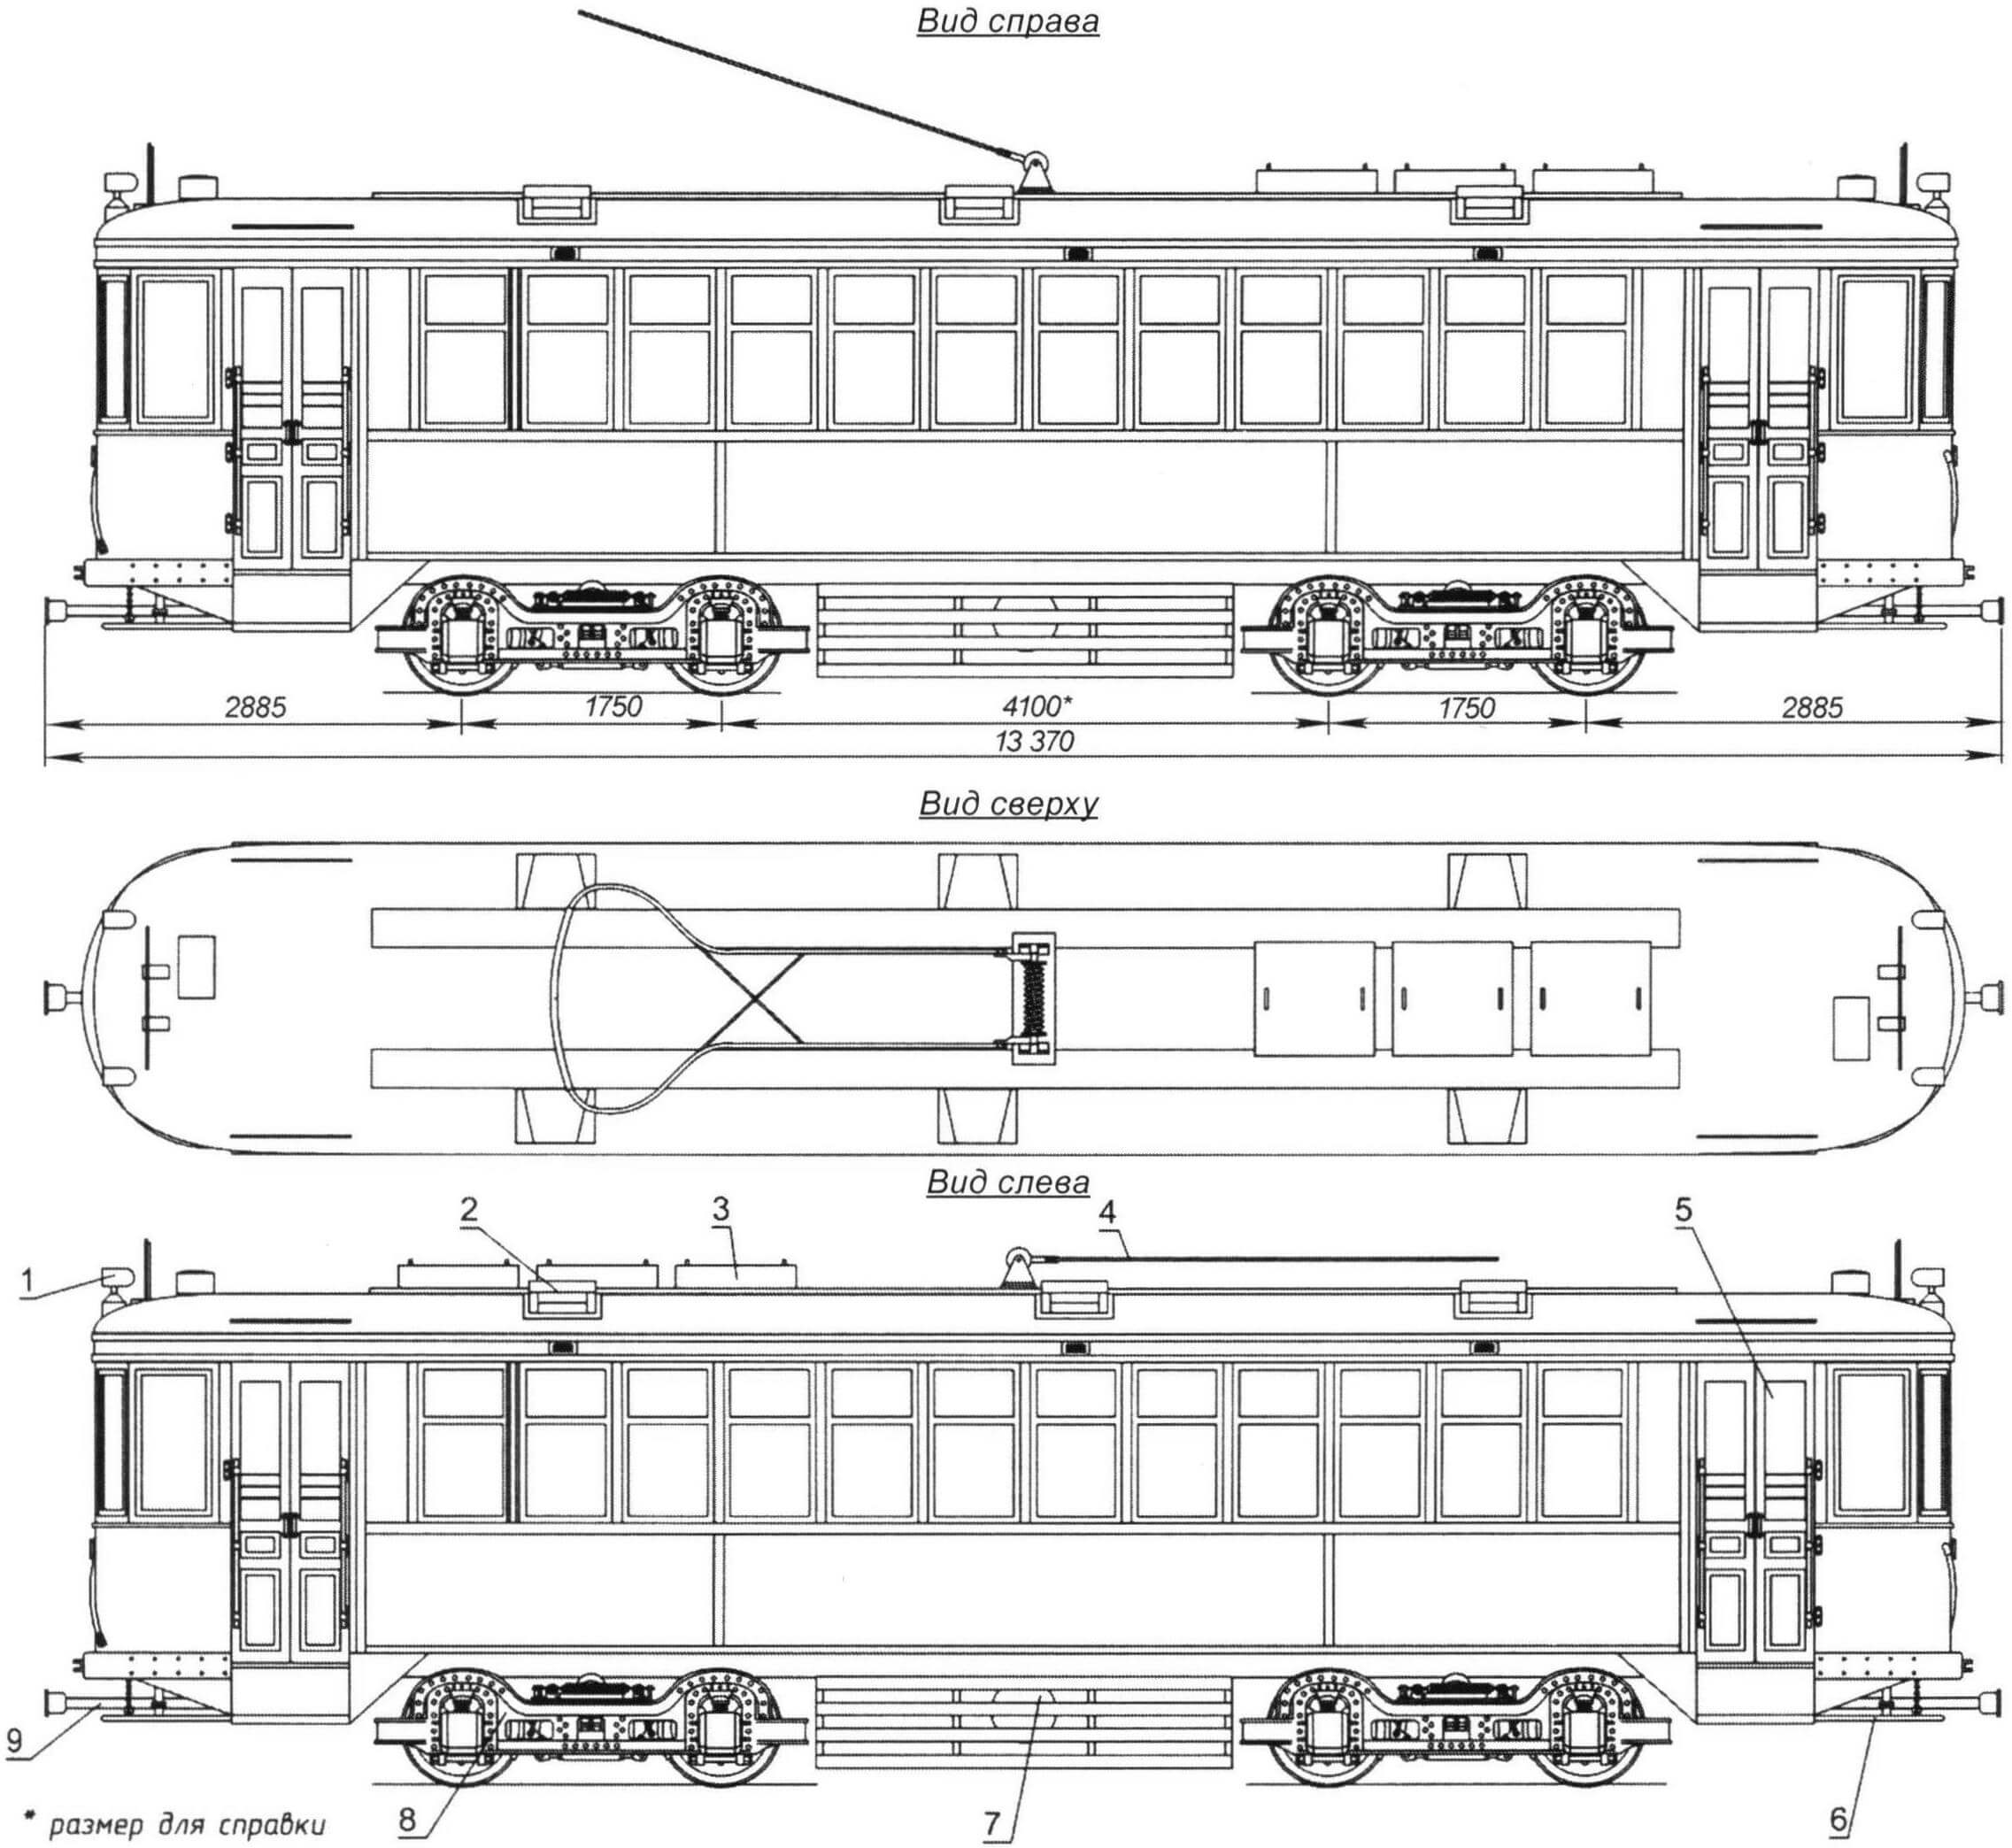 Общий вид и основные размеры трамвая КМ